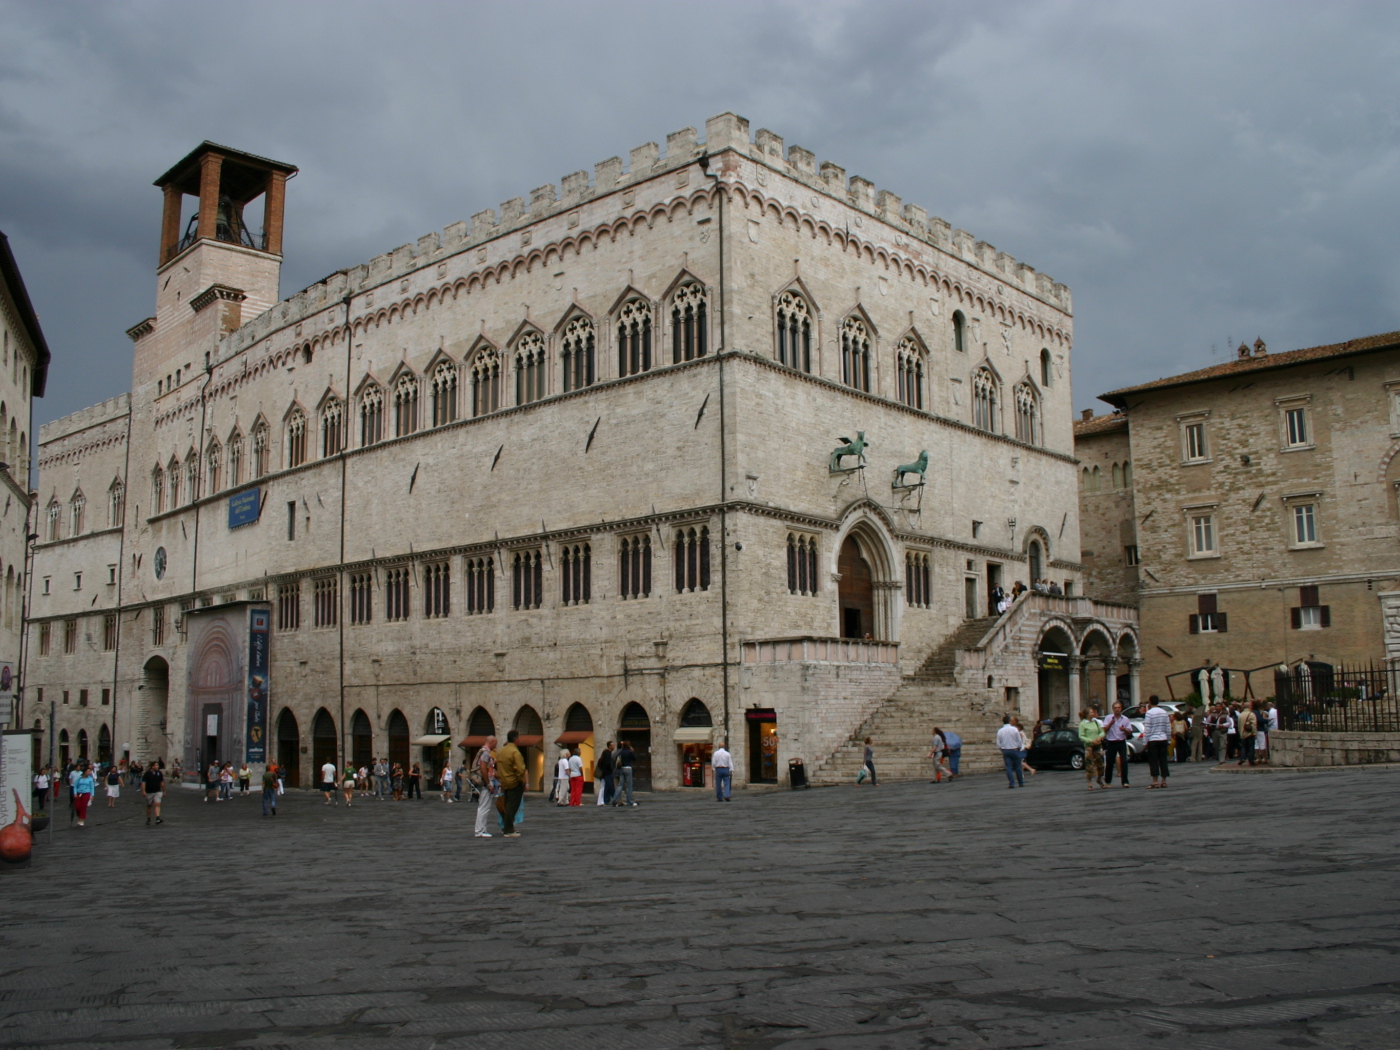 Area in Perugia, Italy